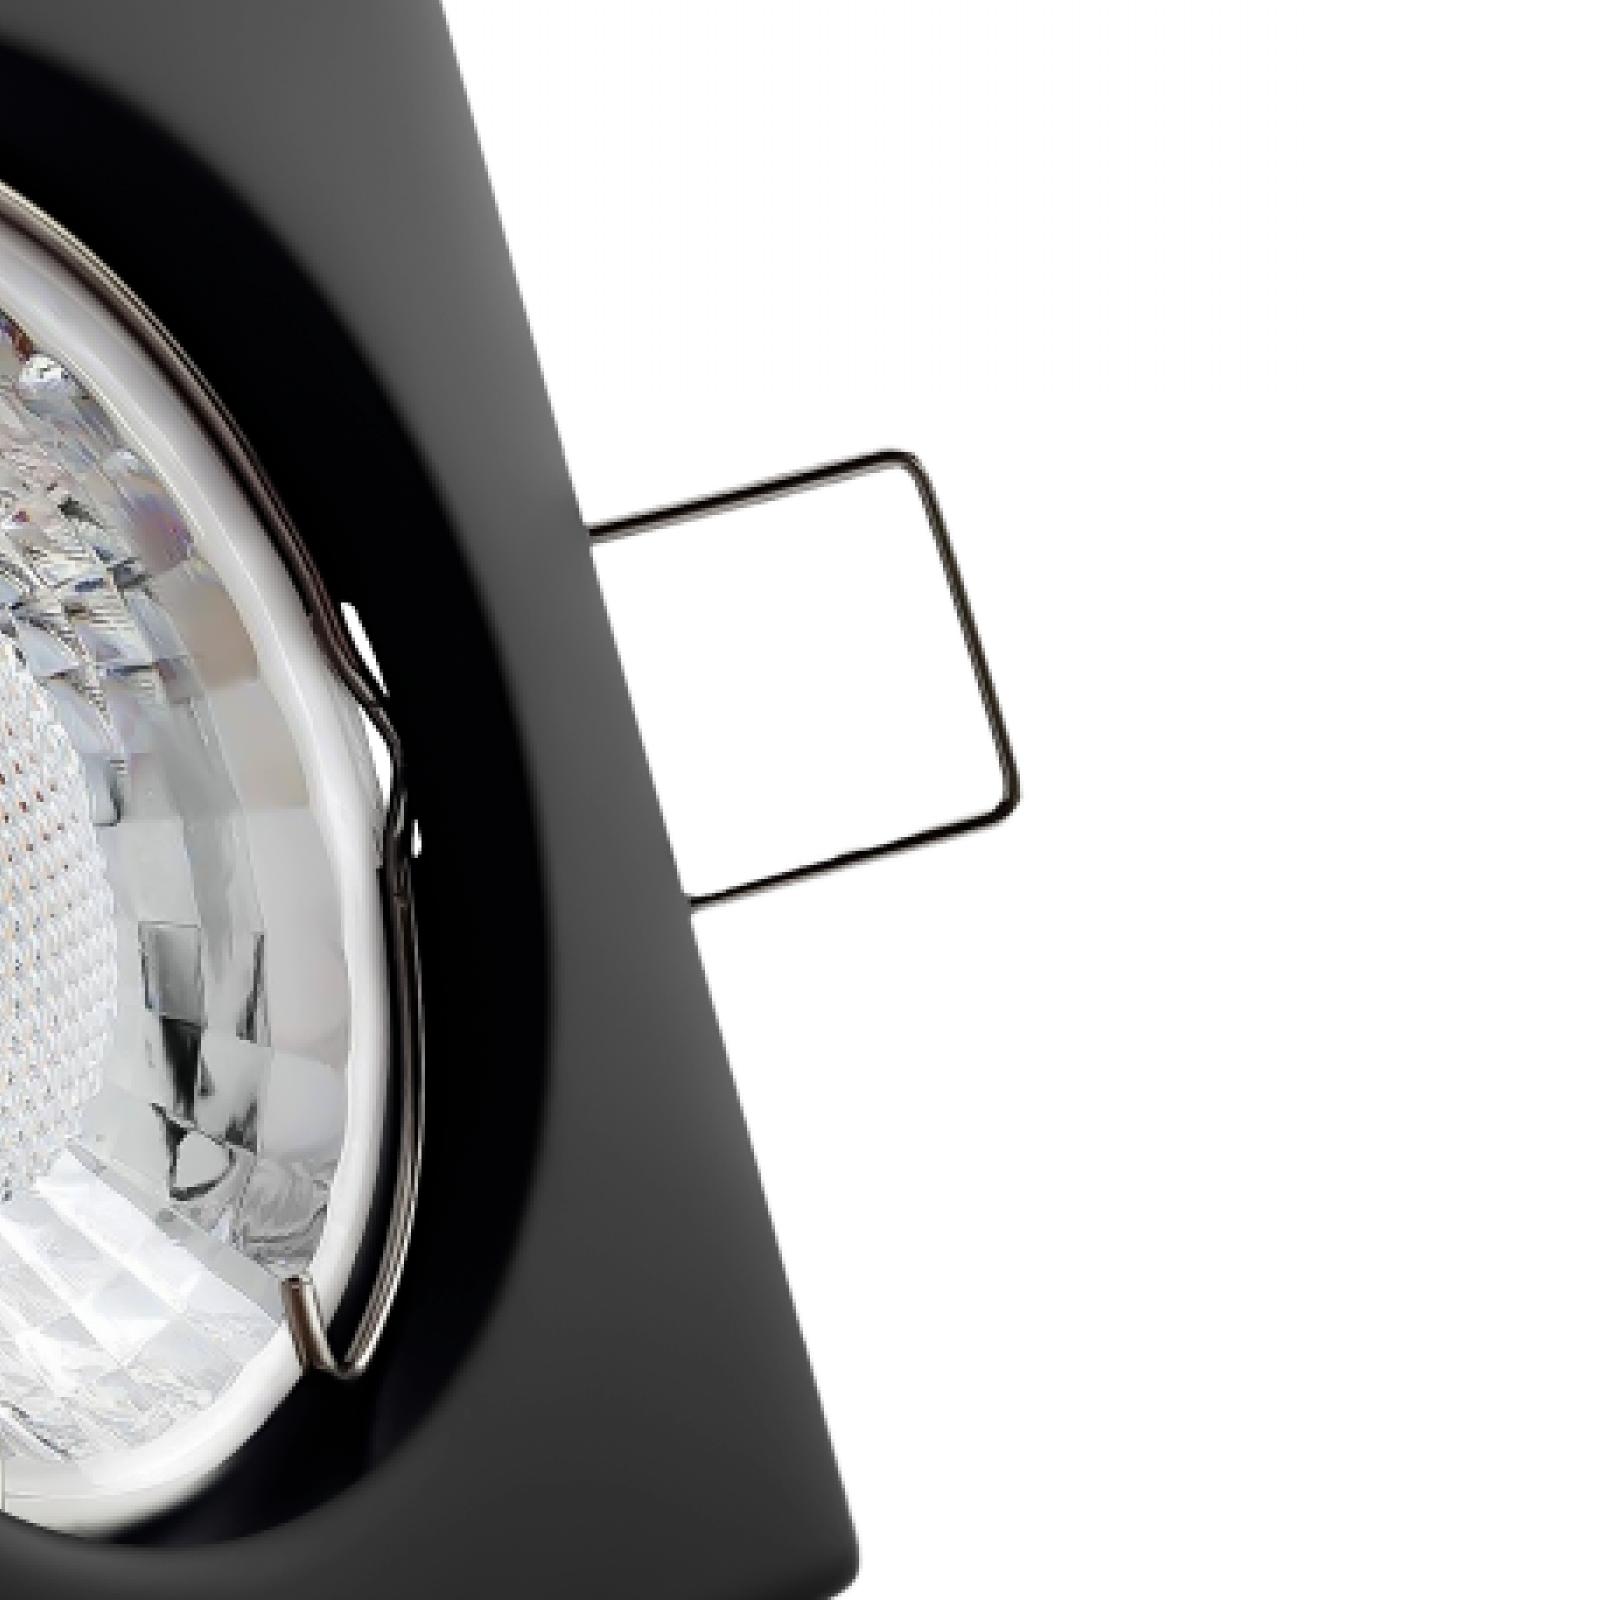 LED Einbaustrahler schwarz | Quadratischer Einbauspot | Lochmaß Ø 55mm - 70mm | Einbautiefe 64mm | Anschlussfertig mit GU10 230V Fassung 